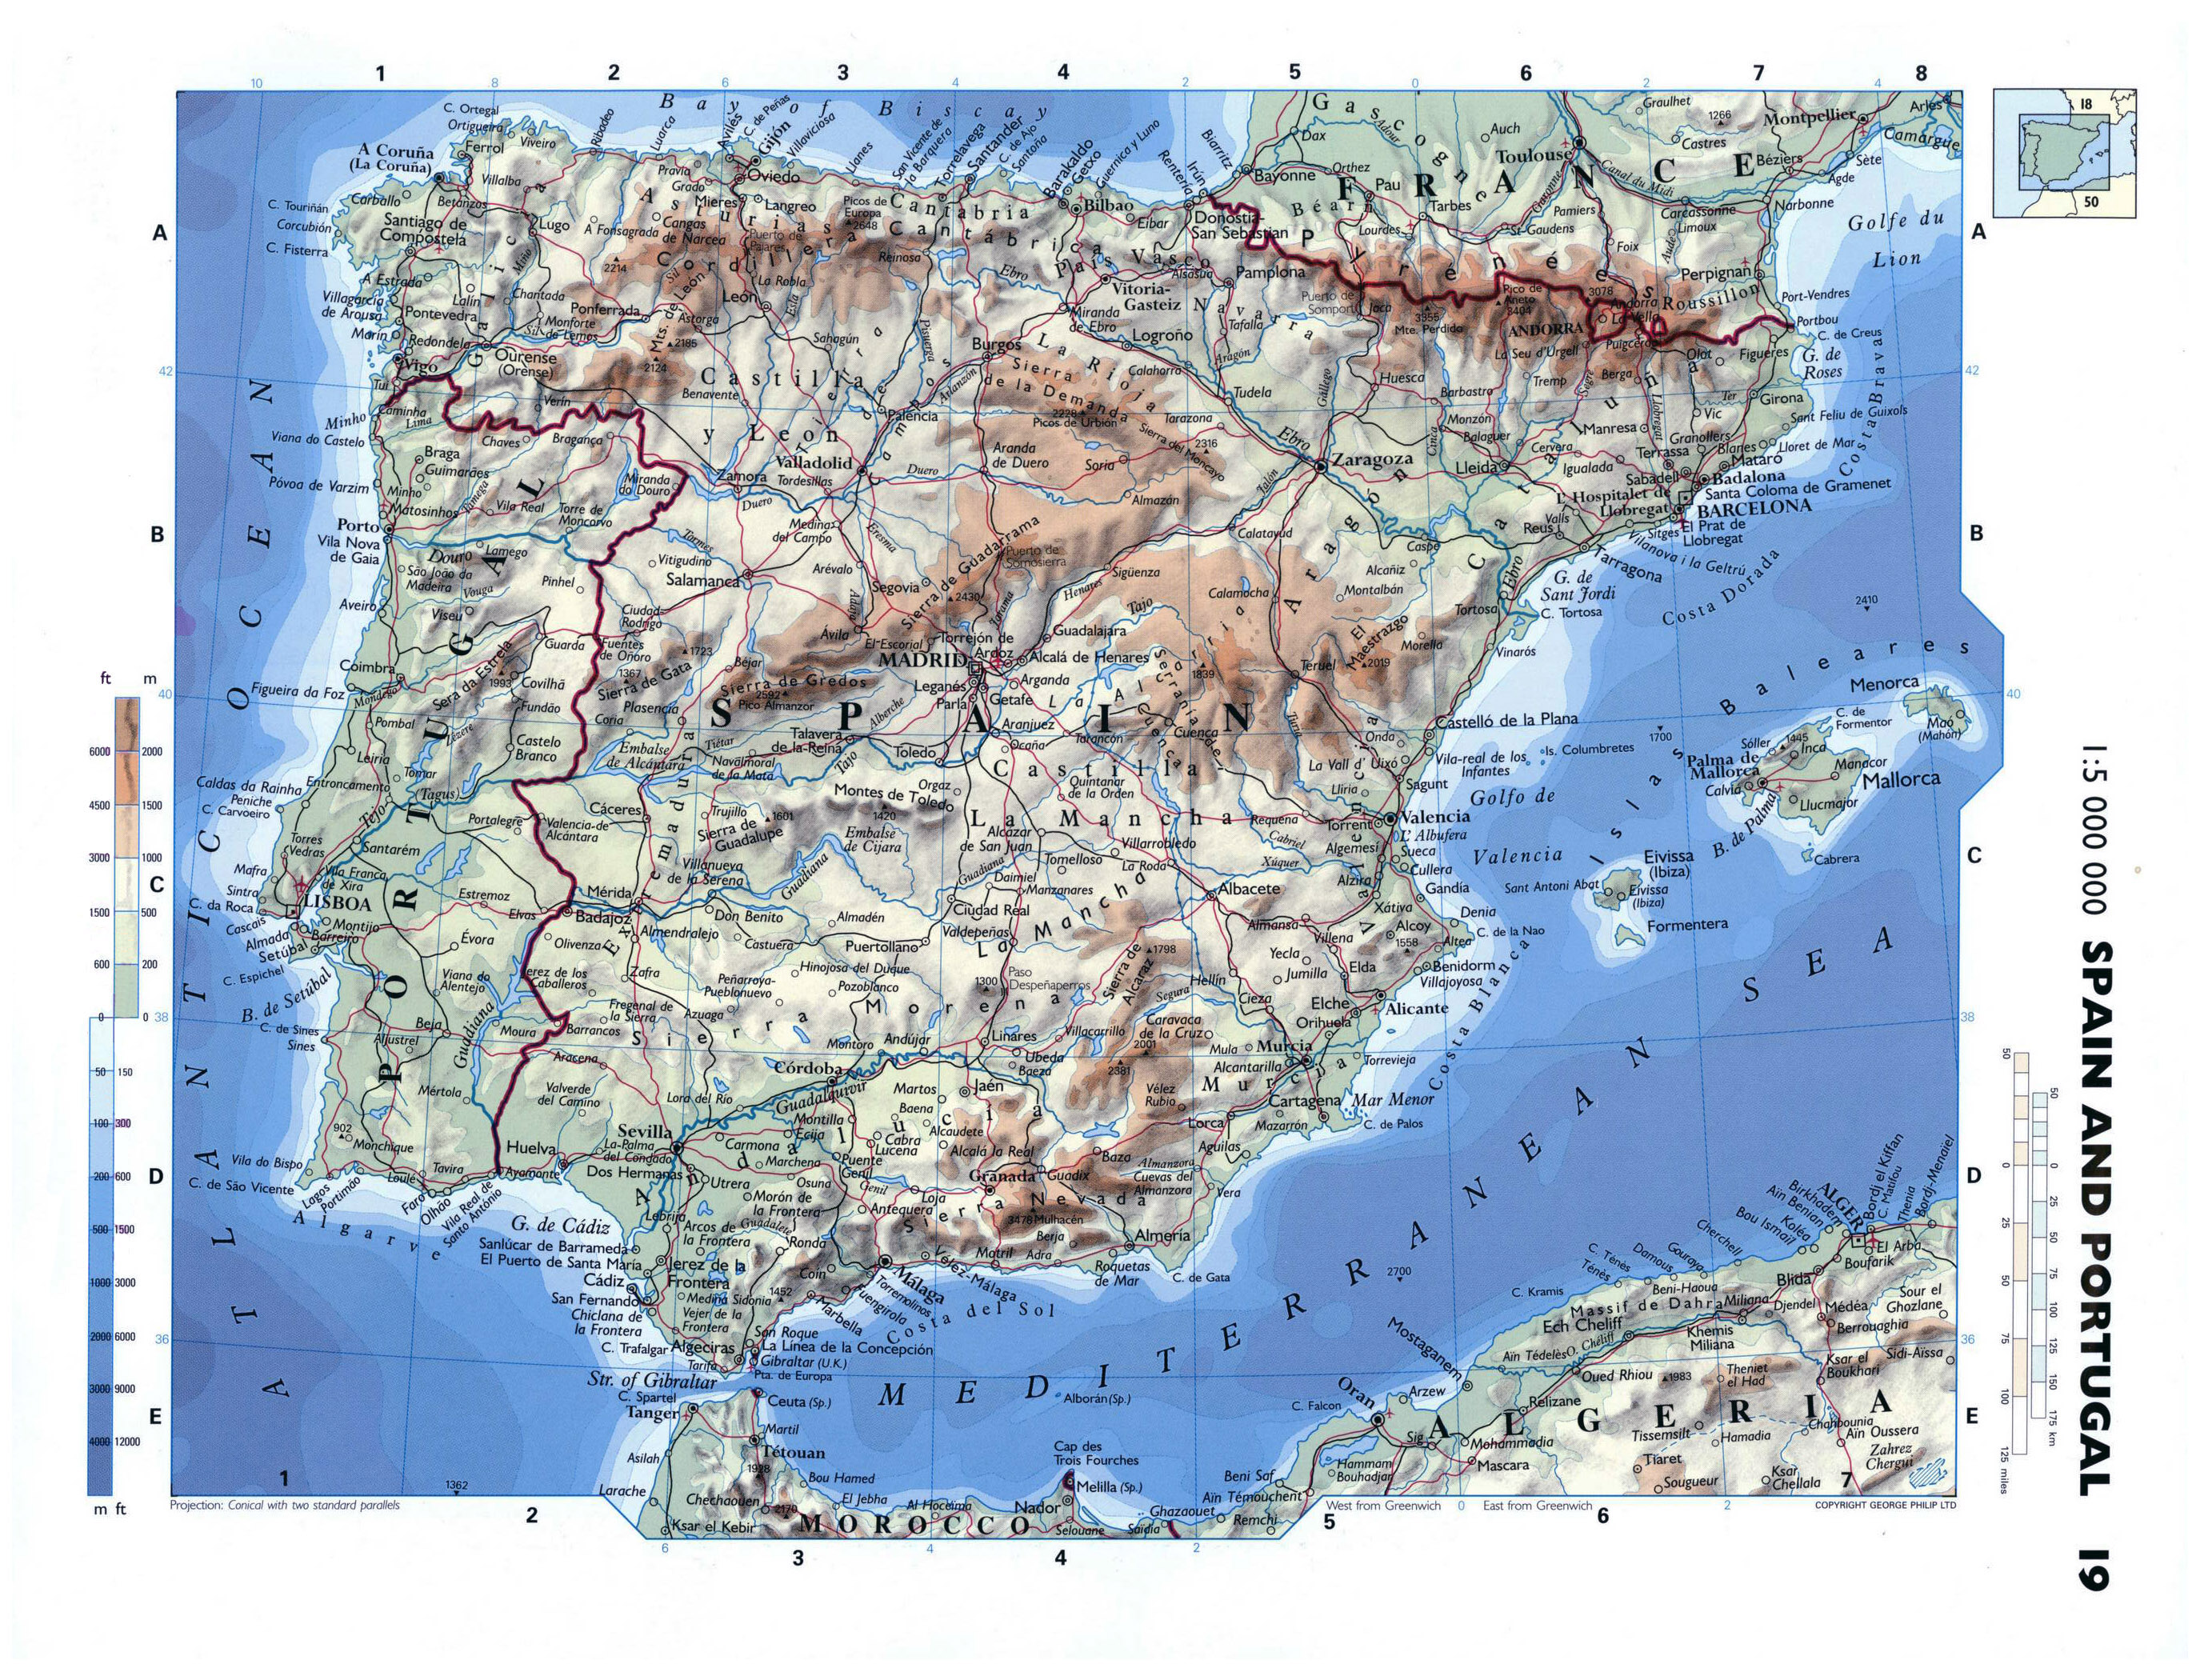 Grande Detallado Mapa Físico De España Y Portugal Con Carreteras Ciudades Y Aeropuertos 6719